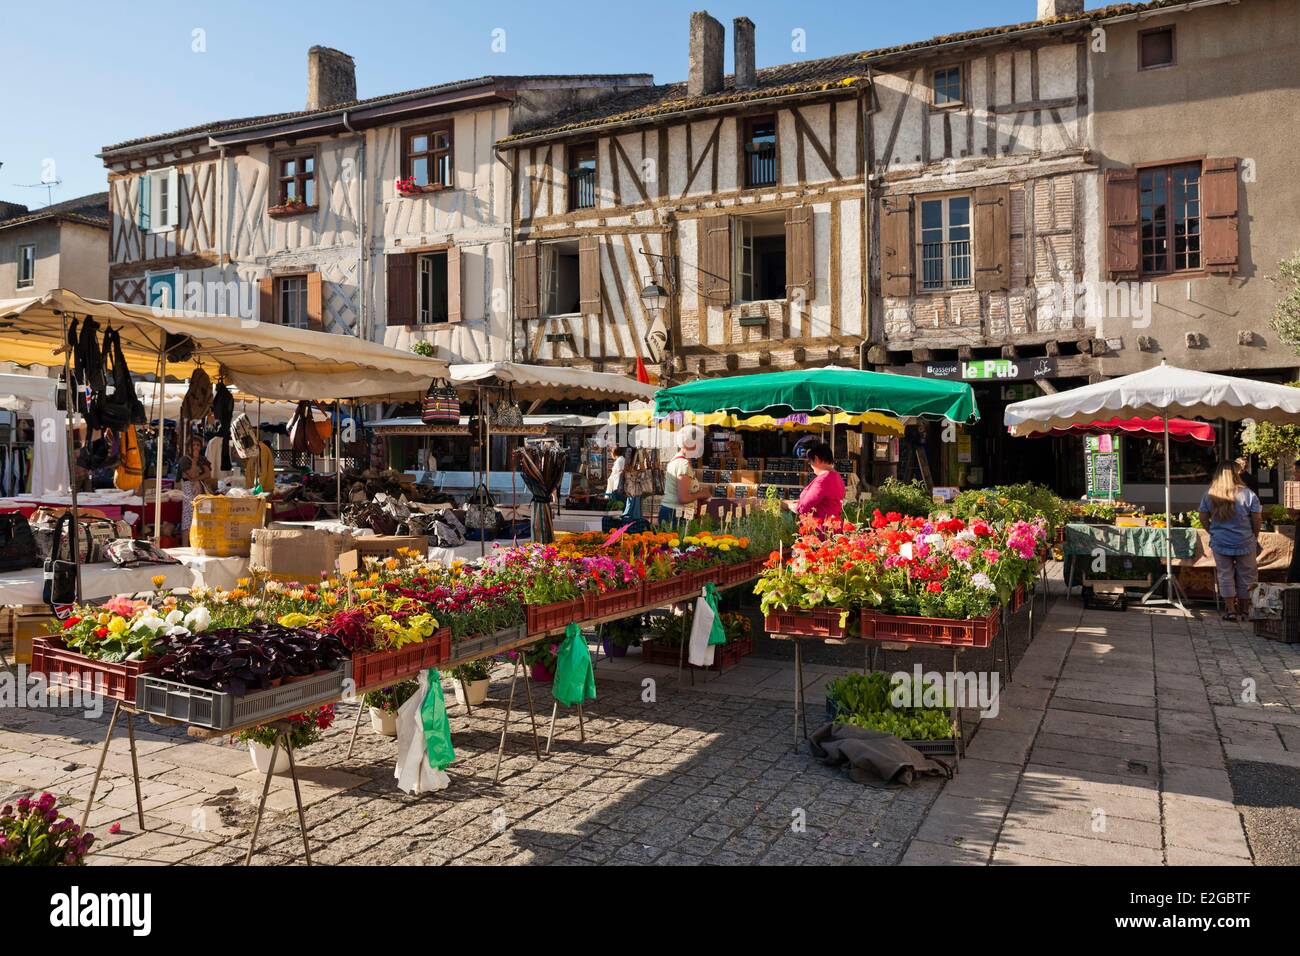 Image result for images of market in Eymet